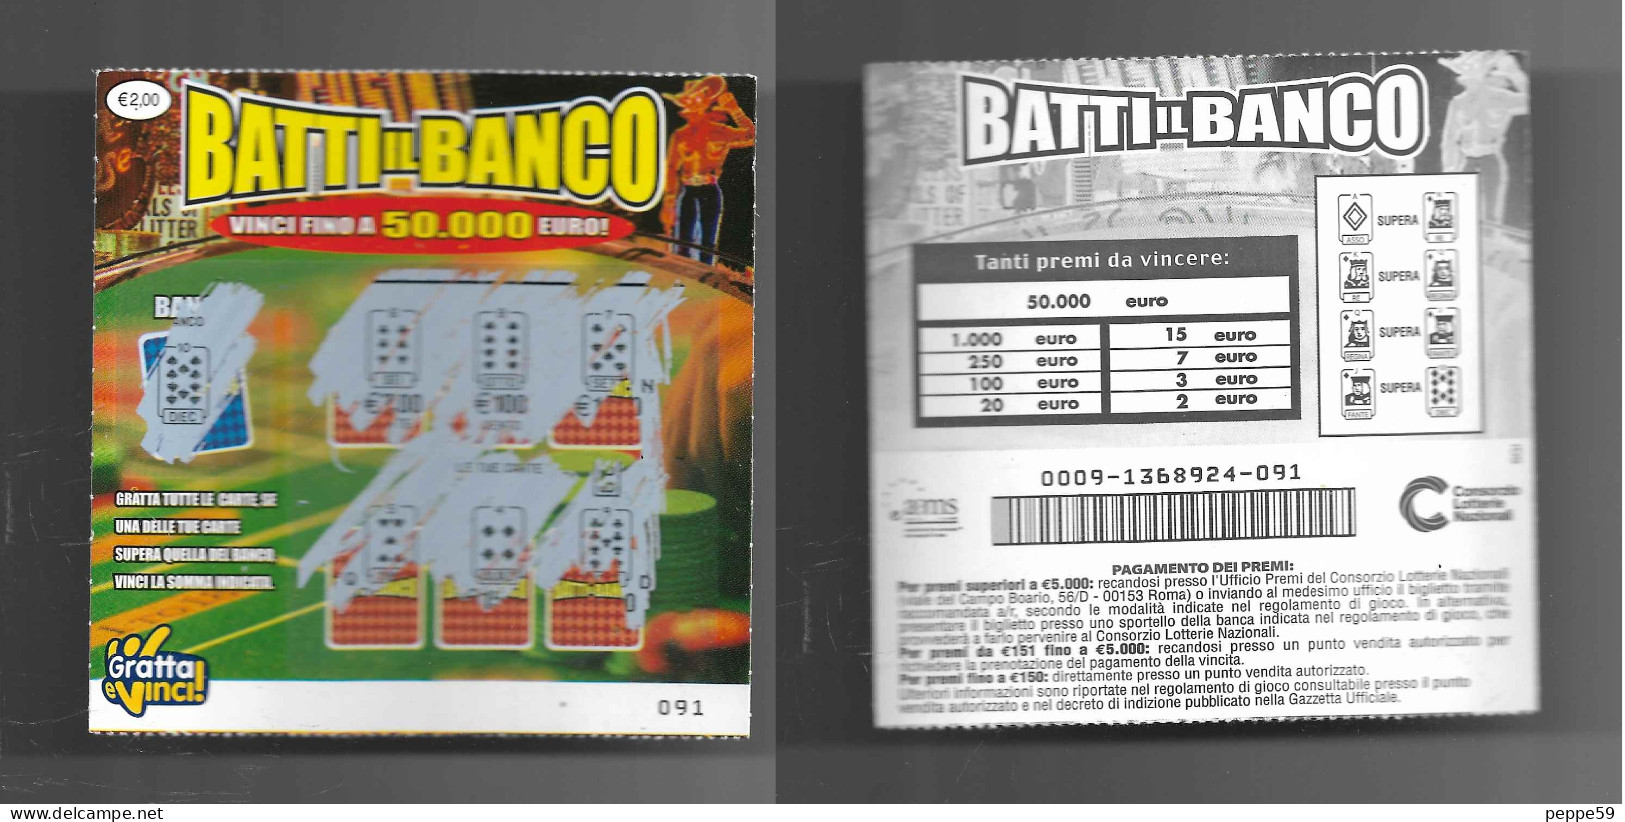 Gratta E Vinci - Batti Il Banco - Lotto 0009 - 112 - Billets De Loterie